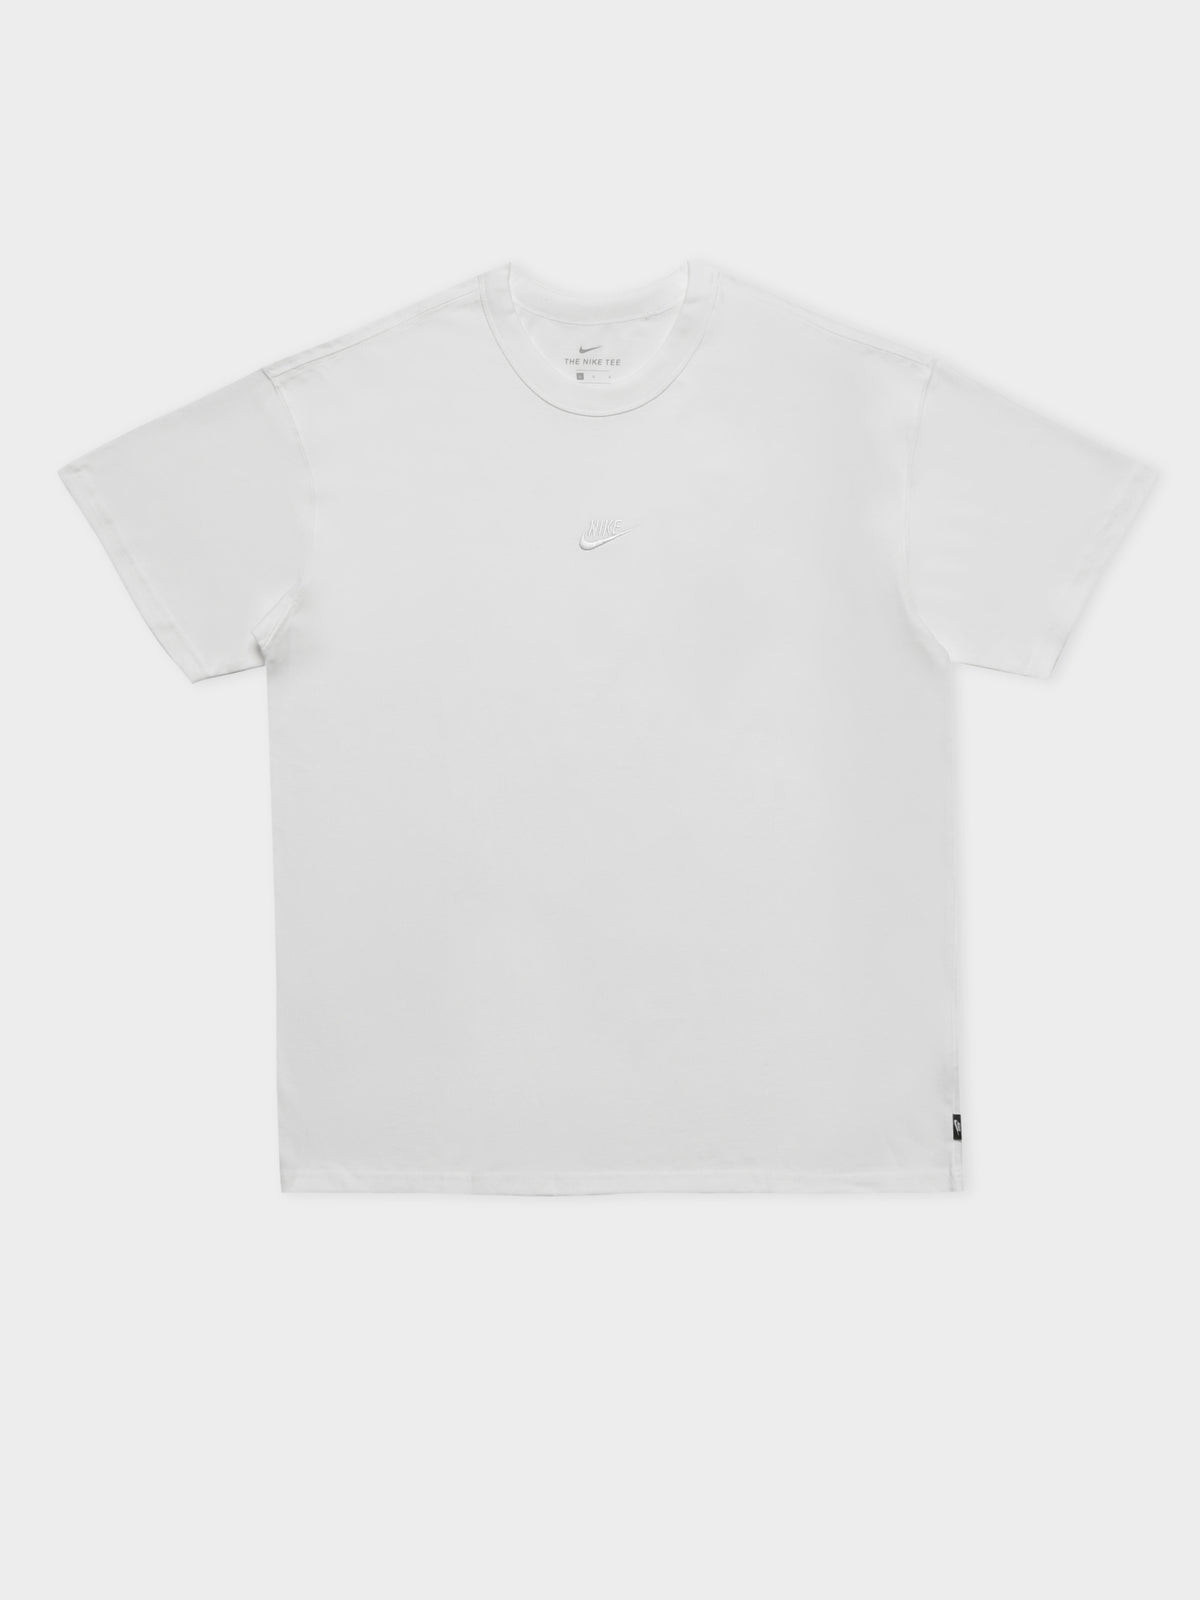 Premium Essential T-Shirt in White